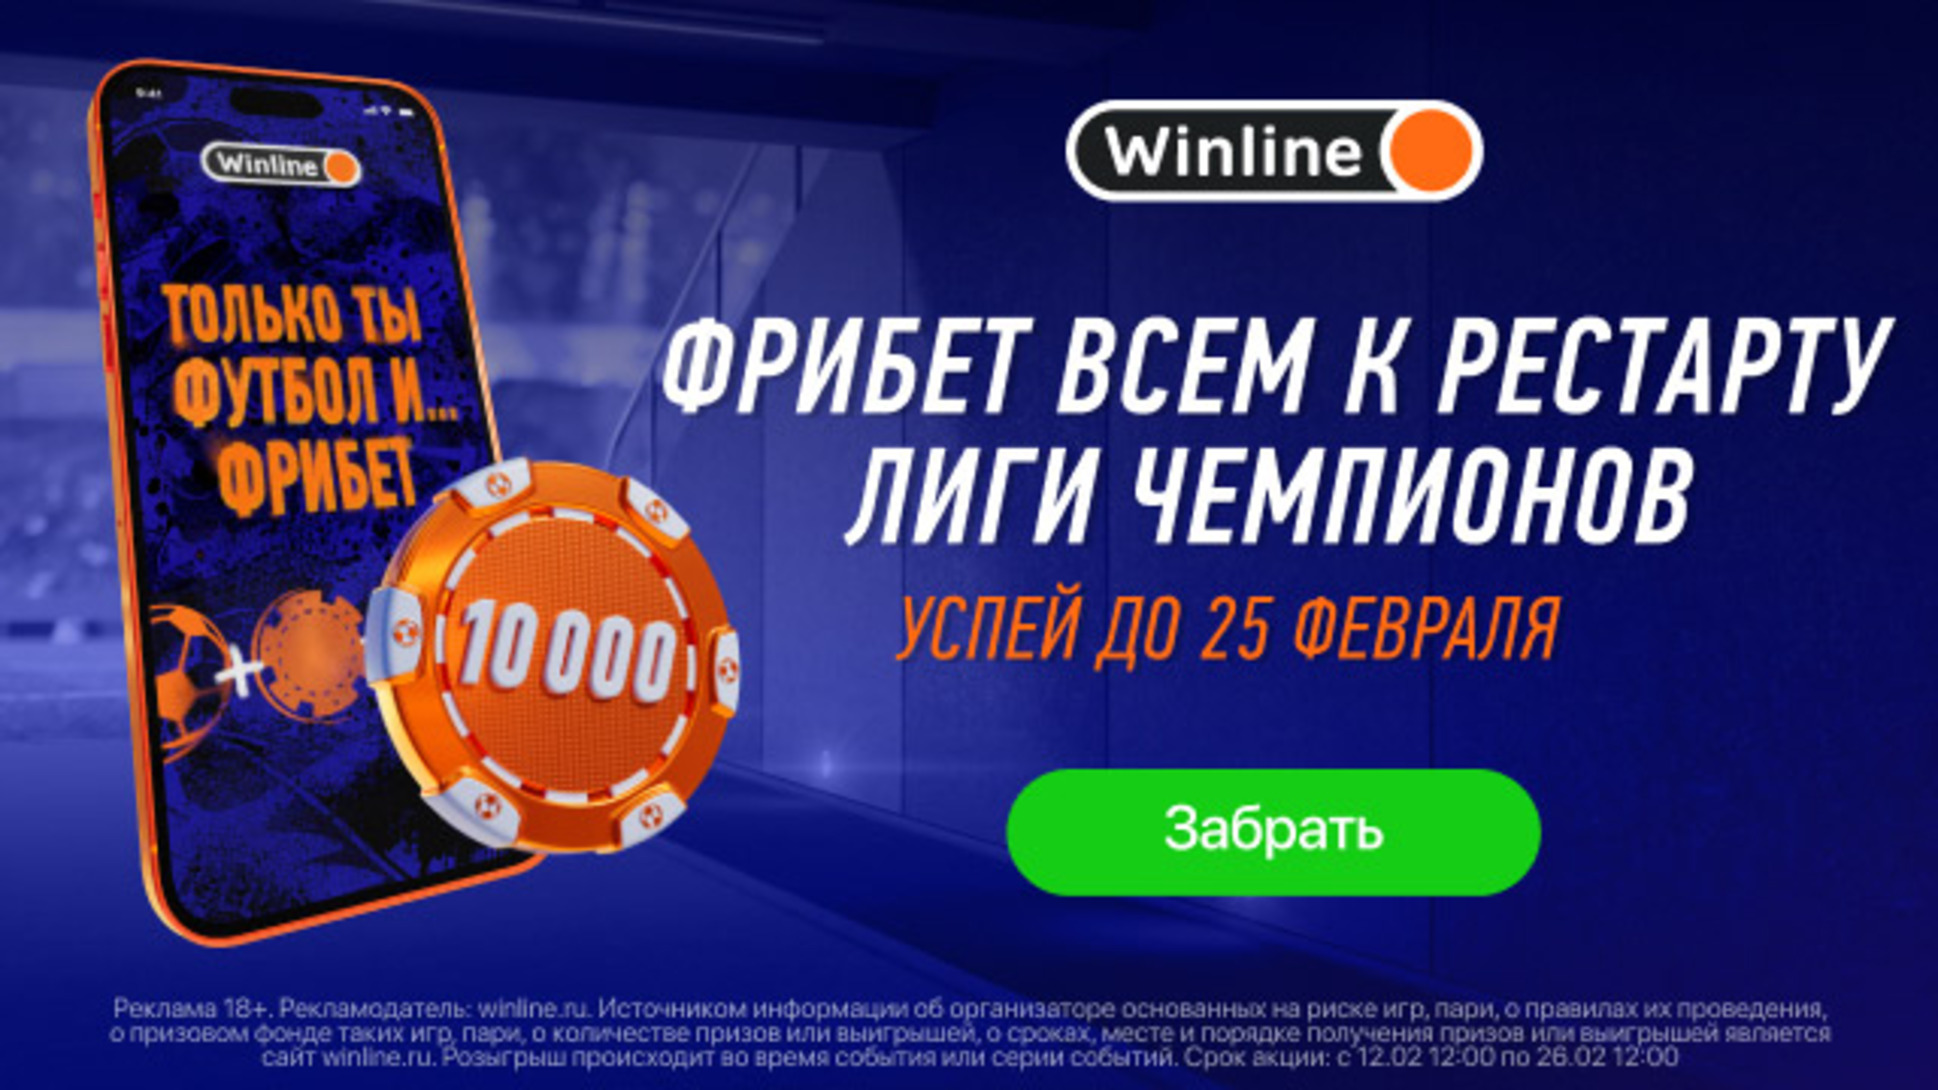 Бездепозитный фрибет в Винлайн: 10000 рублей в приложении